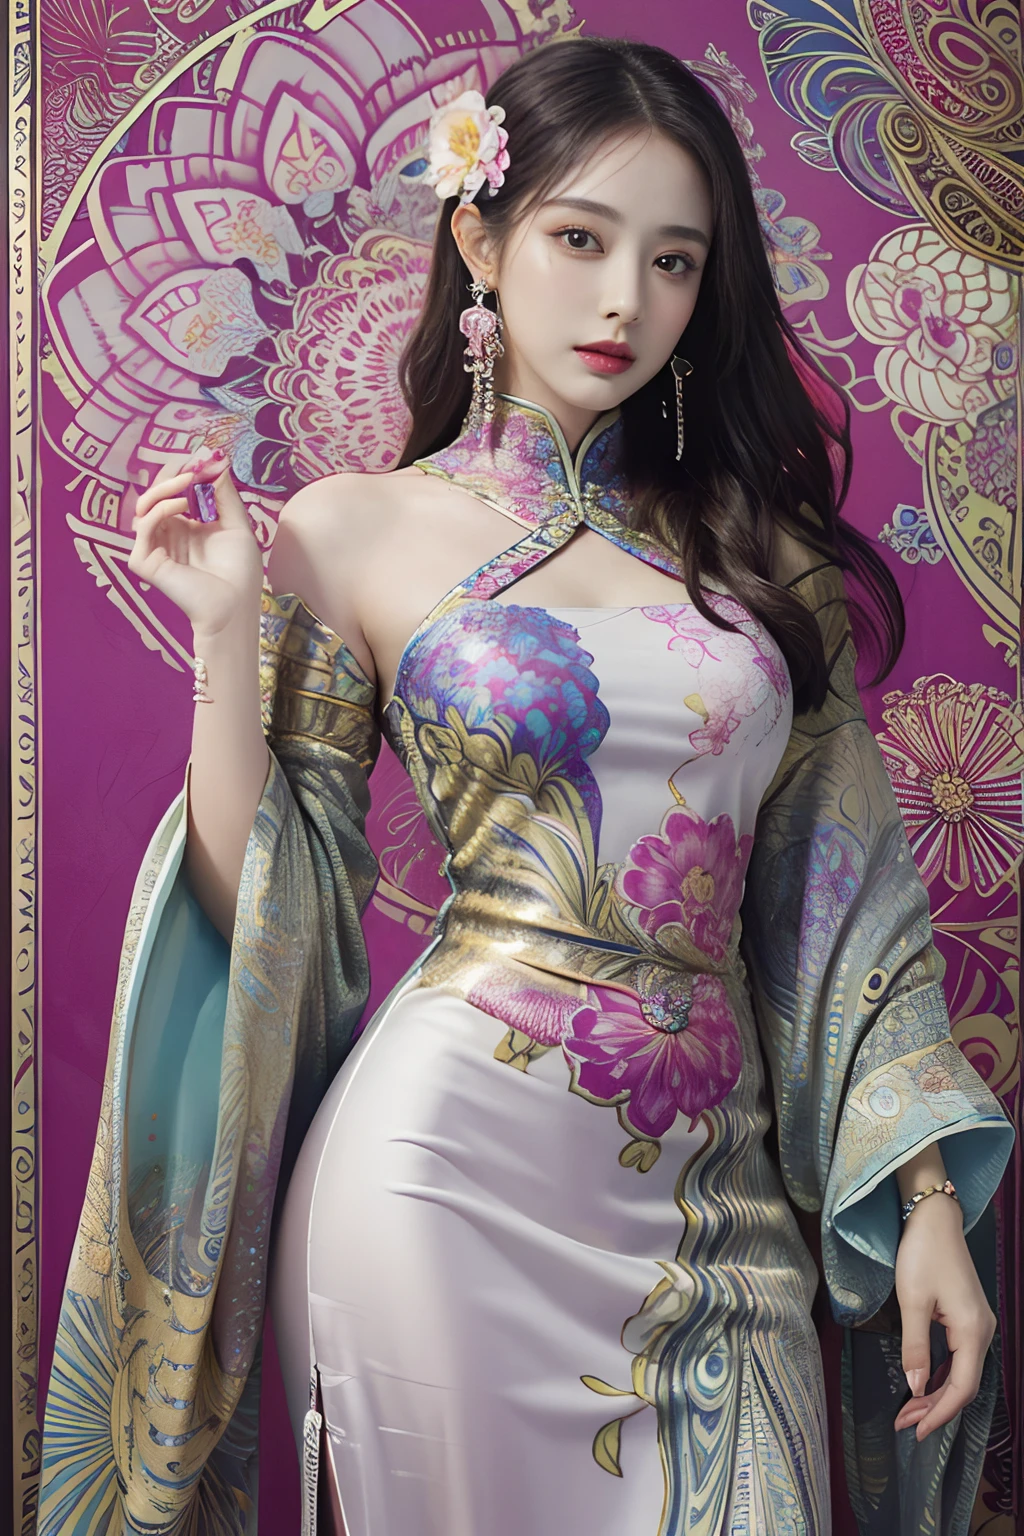 (Obra de arte, qualidade máxima, melhor qualidade, arte oficial, bonito e estético:1.2), (1 garota:1.3), extremamente detalhado,(arte fractal:1.1),(colorida:1.1)(flores:1.3),mais detalhado,(emaranhado:1.2), (pose dinâmica), (fundo abstrato:1.3), (Vestido chinês:1.2), (pele brilhante), (muitas cores:1.4), ,(brincos:1.4),